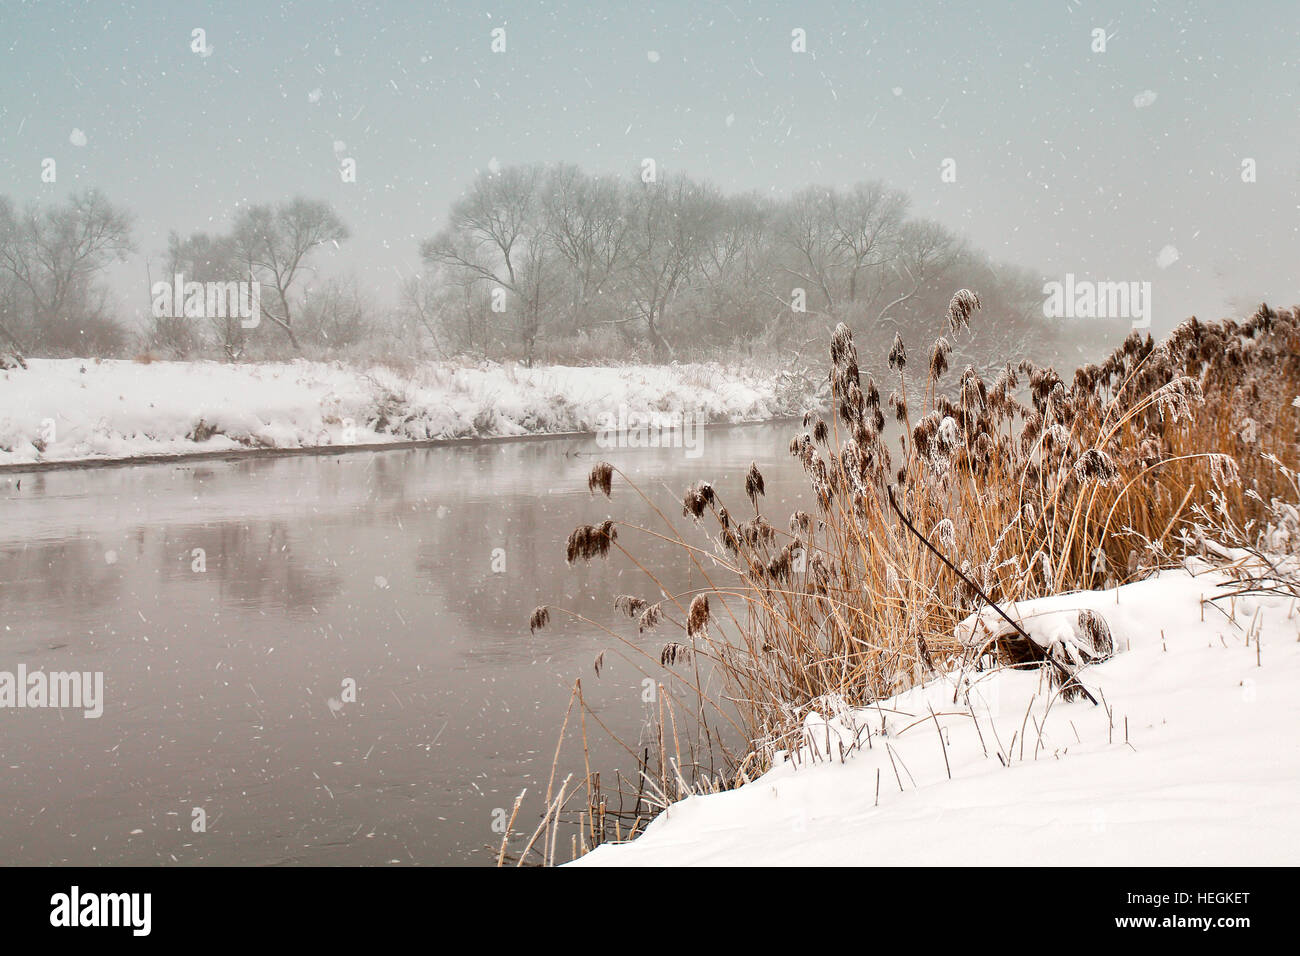 Neige sur la rivière. Misty d'hiver nuageux temps de neige. Canne à sucre et de l'herbe sous la neige et le gel sur la berge. Banque D'Images